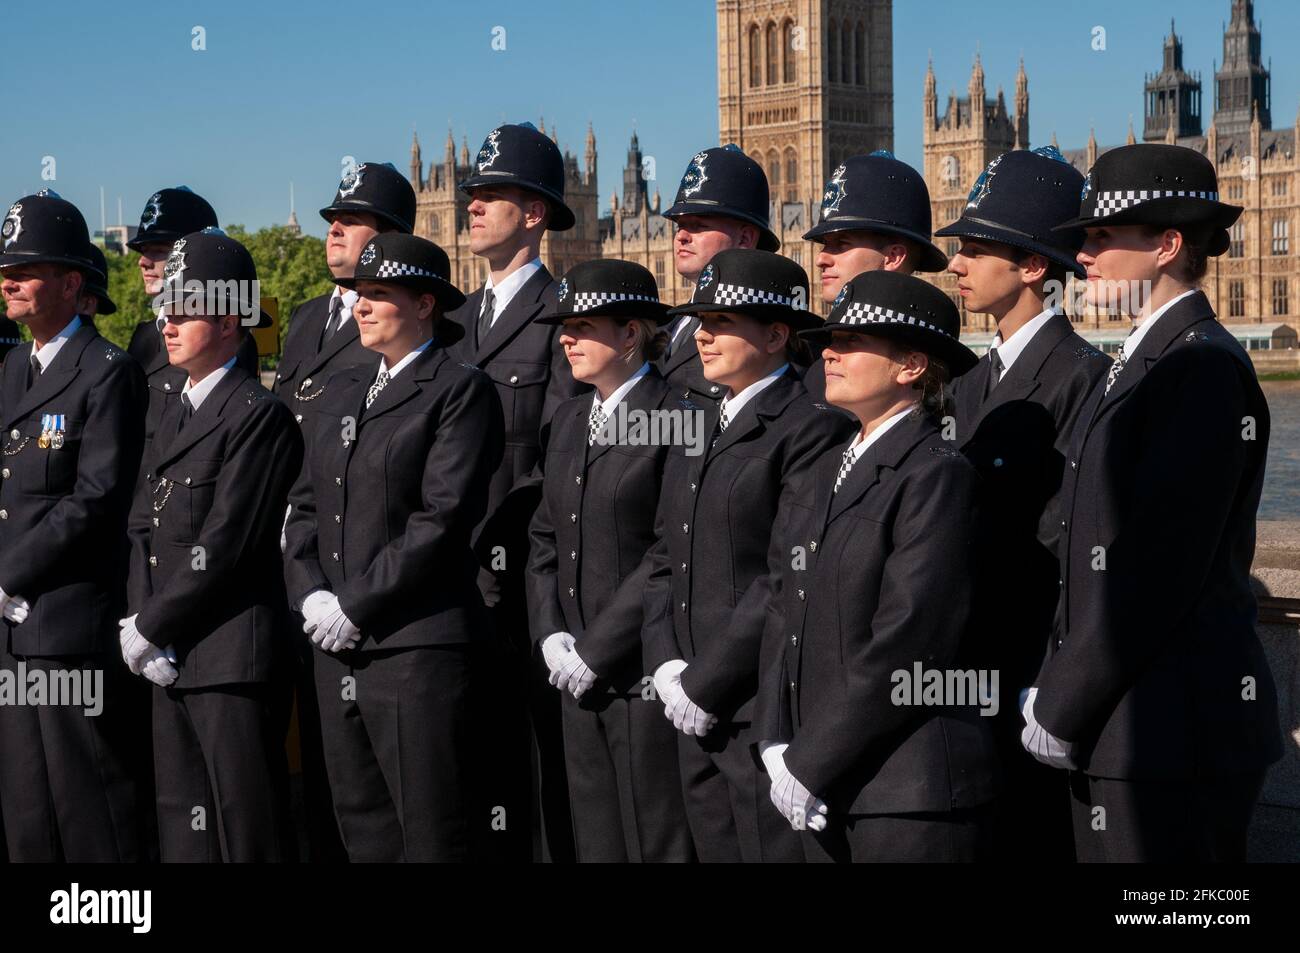 Police métropolitaine en uniforme posant pour une photo de groupe, Londres, Royaume-Uni Banque D'Images